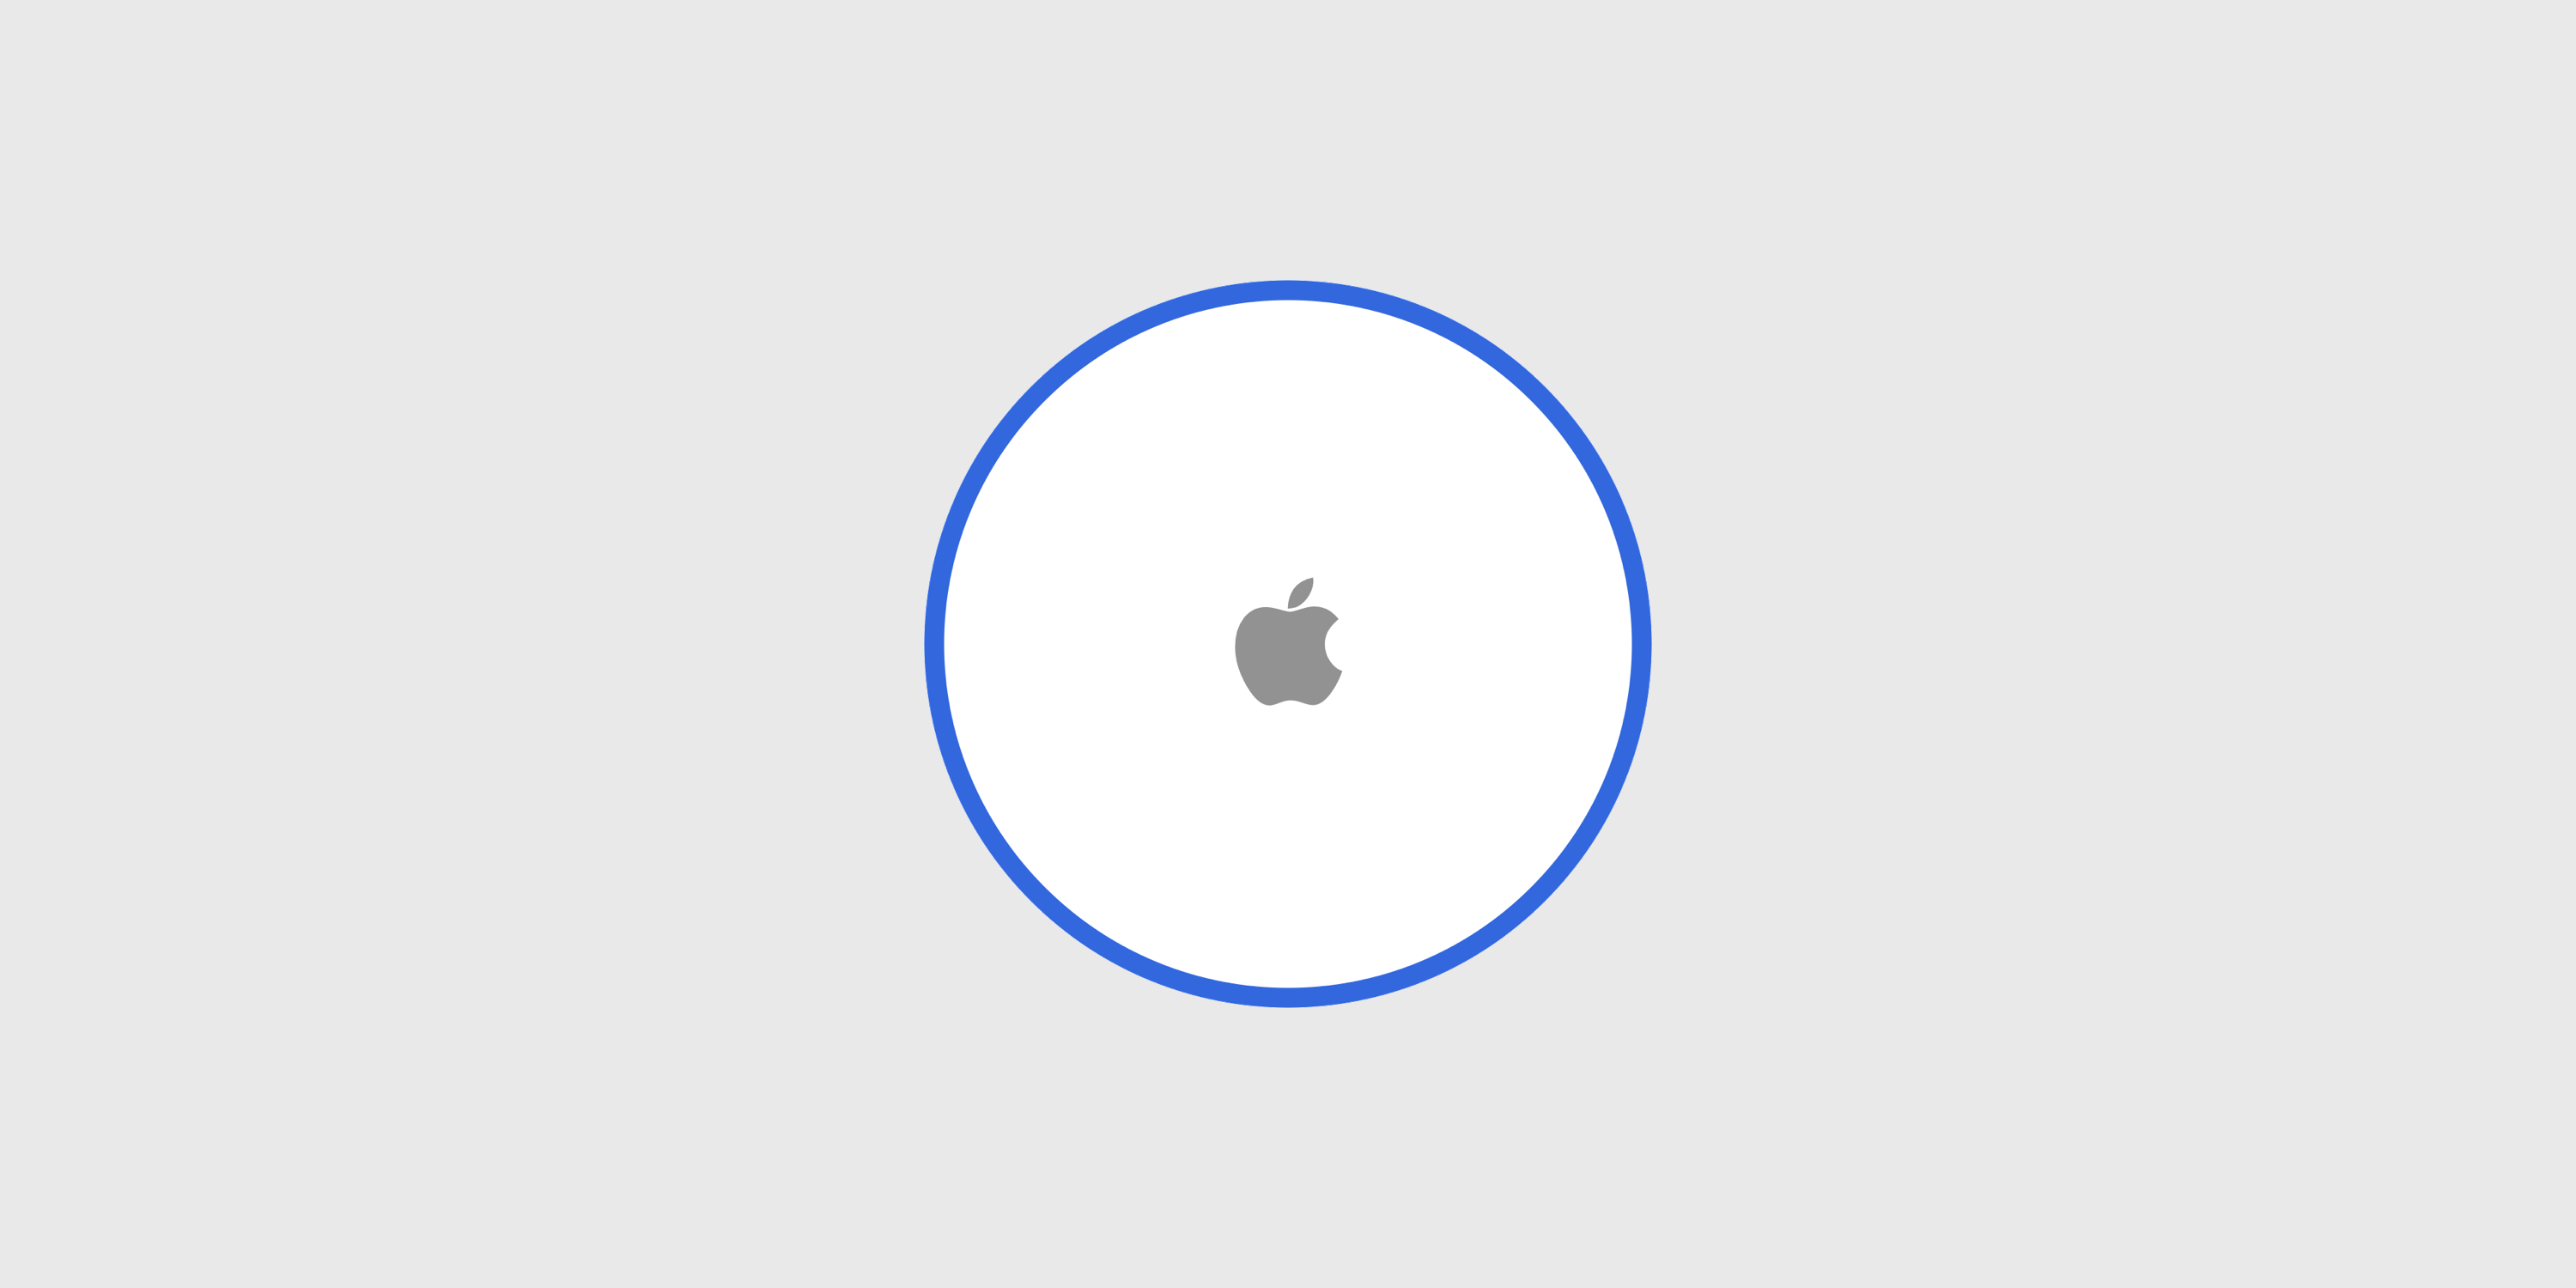 iOS 13 Apple tag device